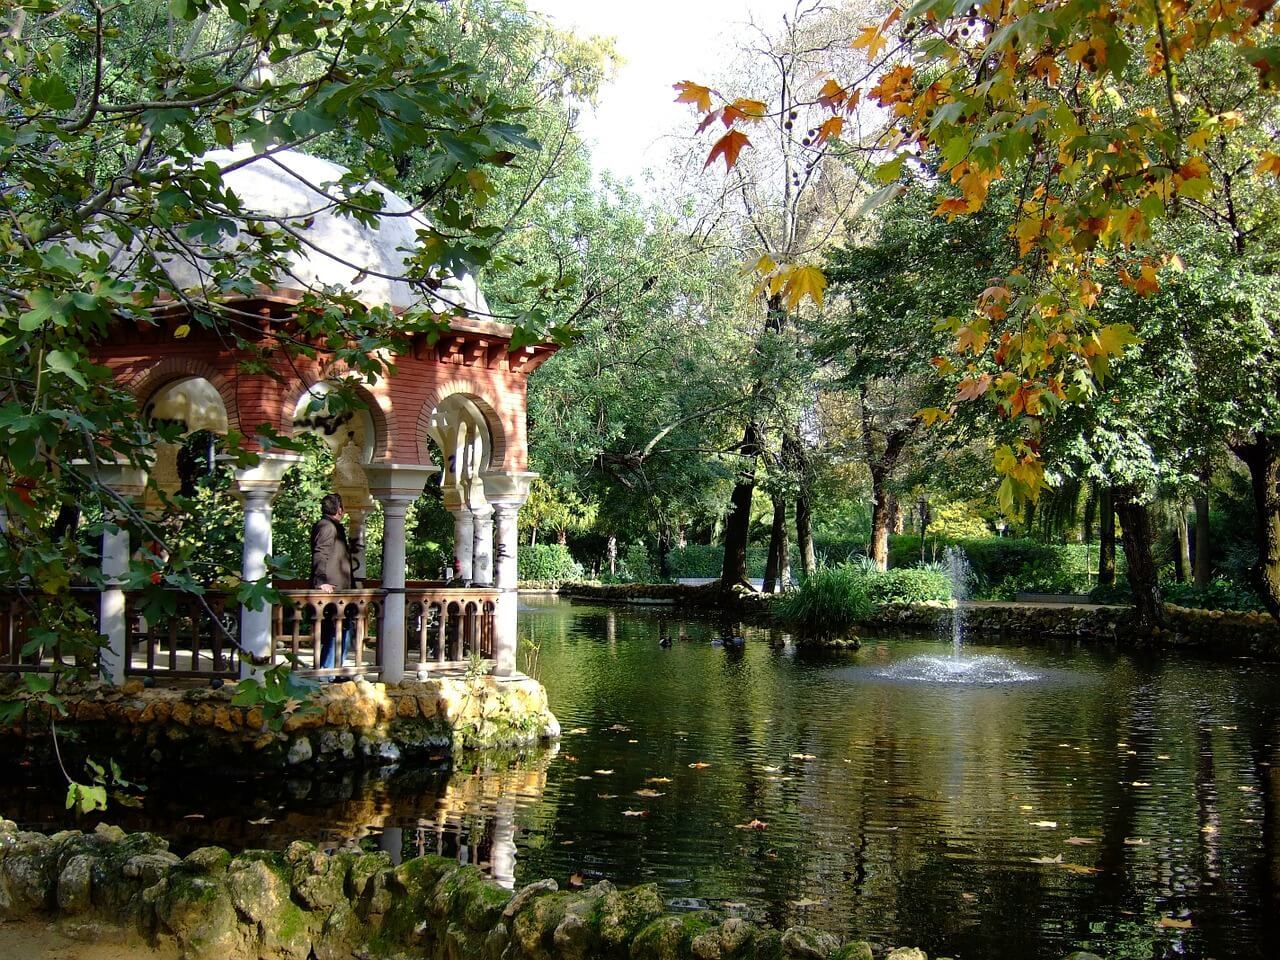 Parque de Maria Luisa in Seville. 